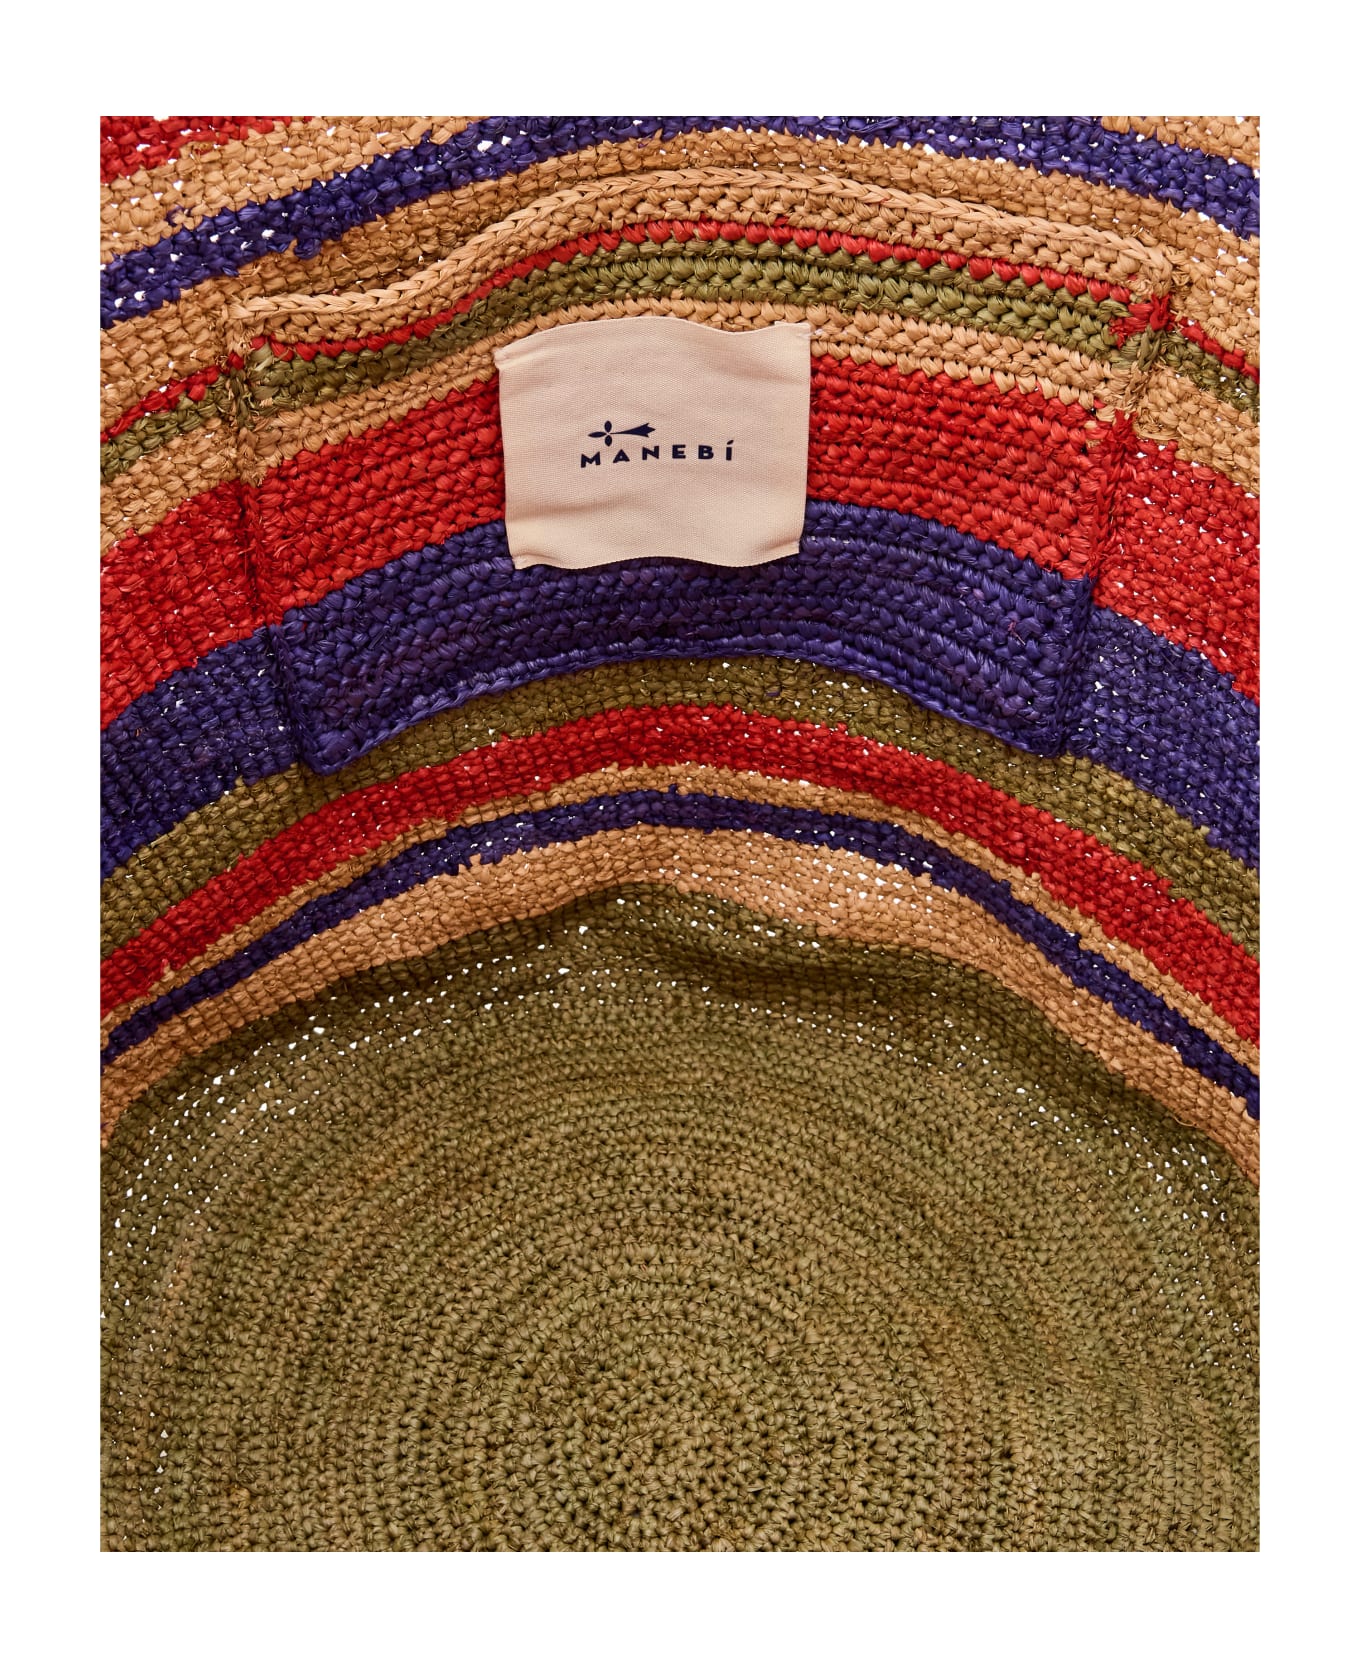 Manebi Striped Raffia Tote Bag - MultiColour トートバッグ